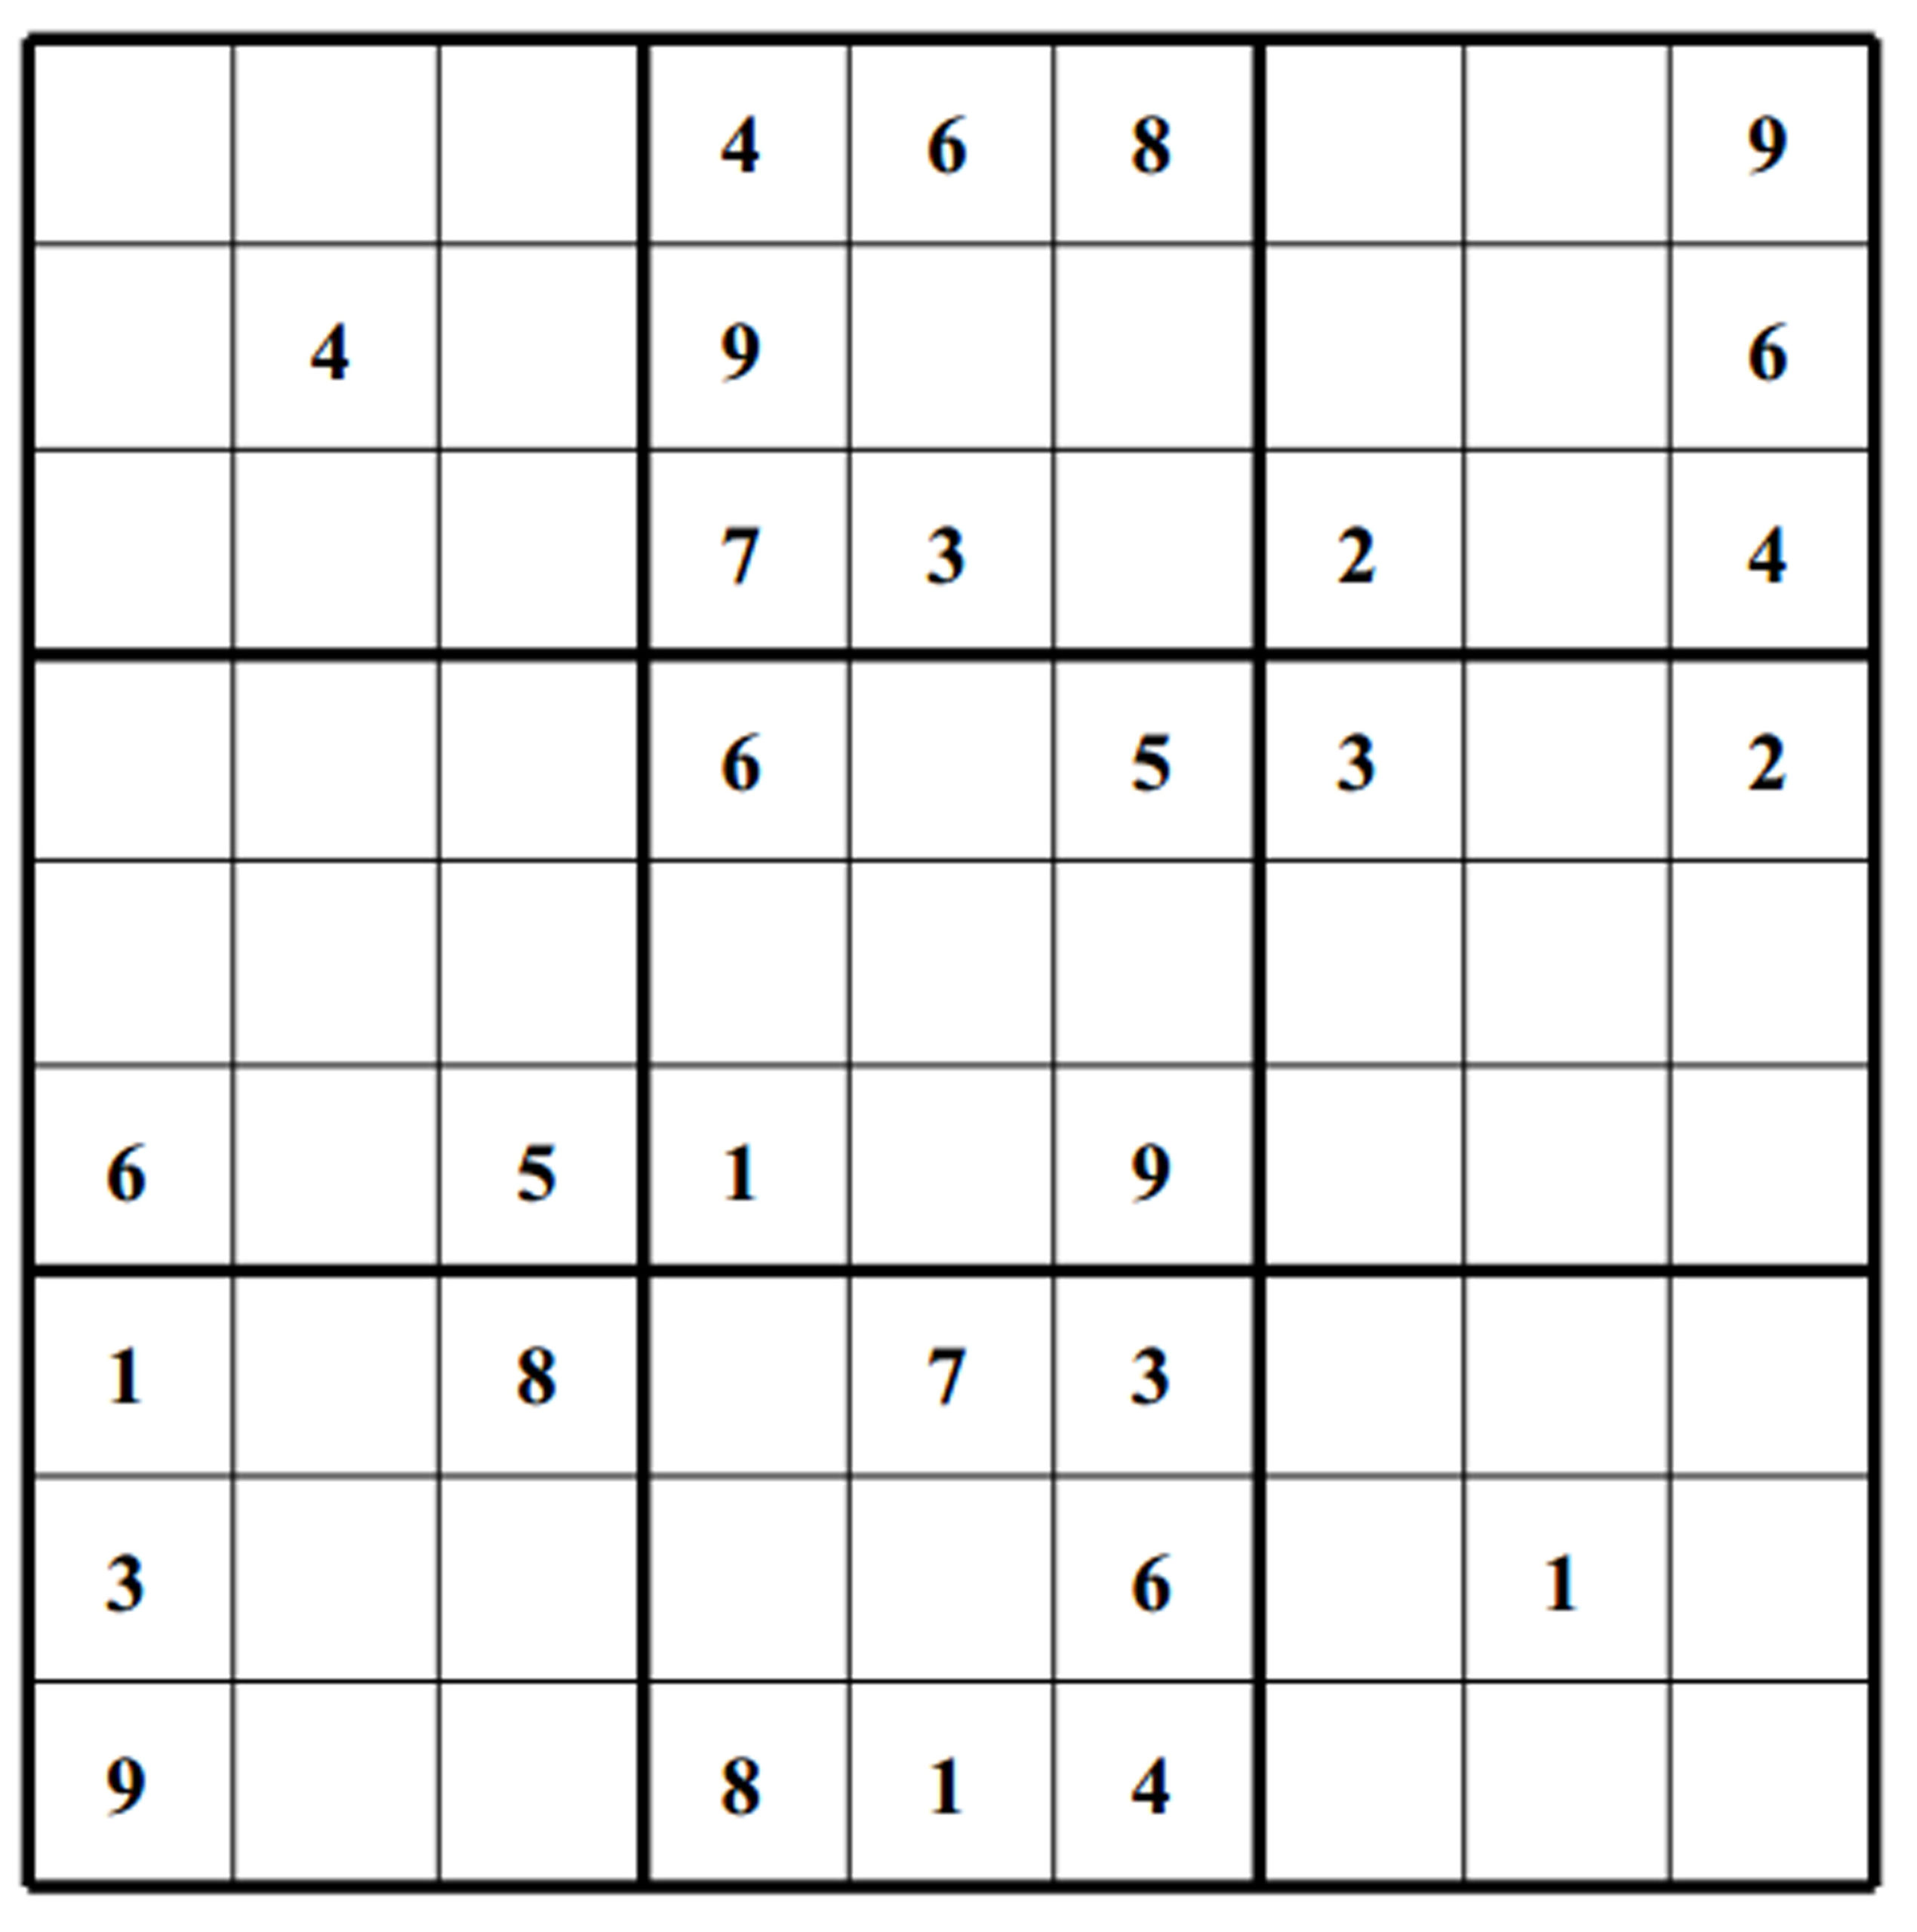 Printable Sudoku Puzzles Very Hard